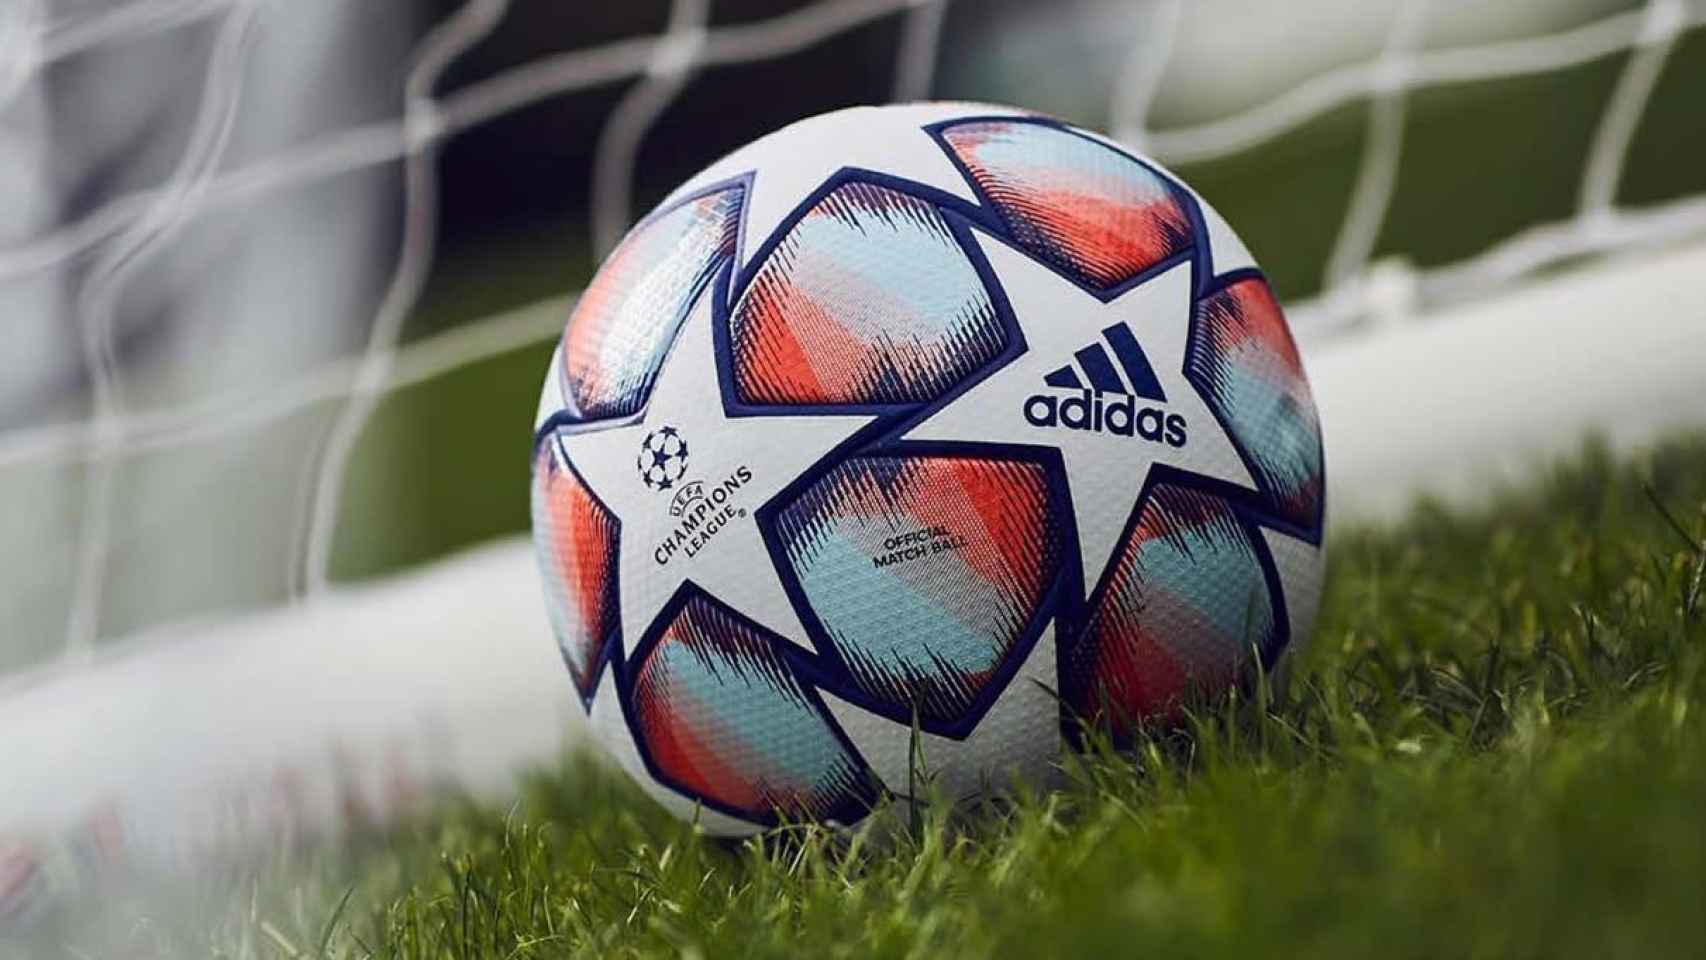 El balón de la UEFA Champions League en una imagen de archivo / UEFA